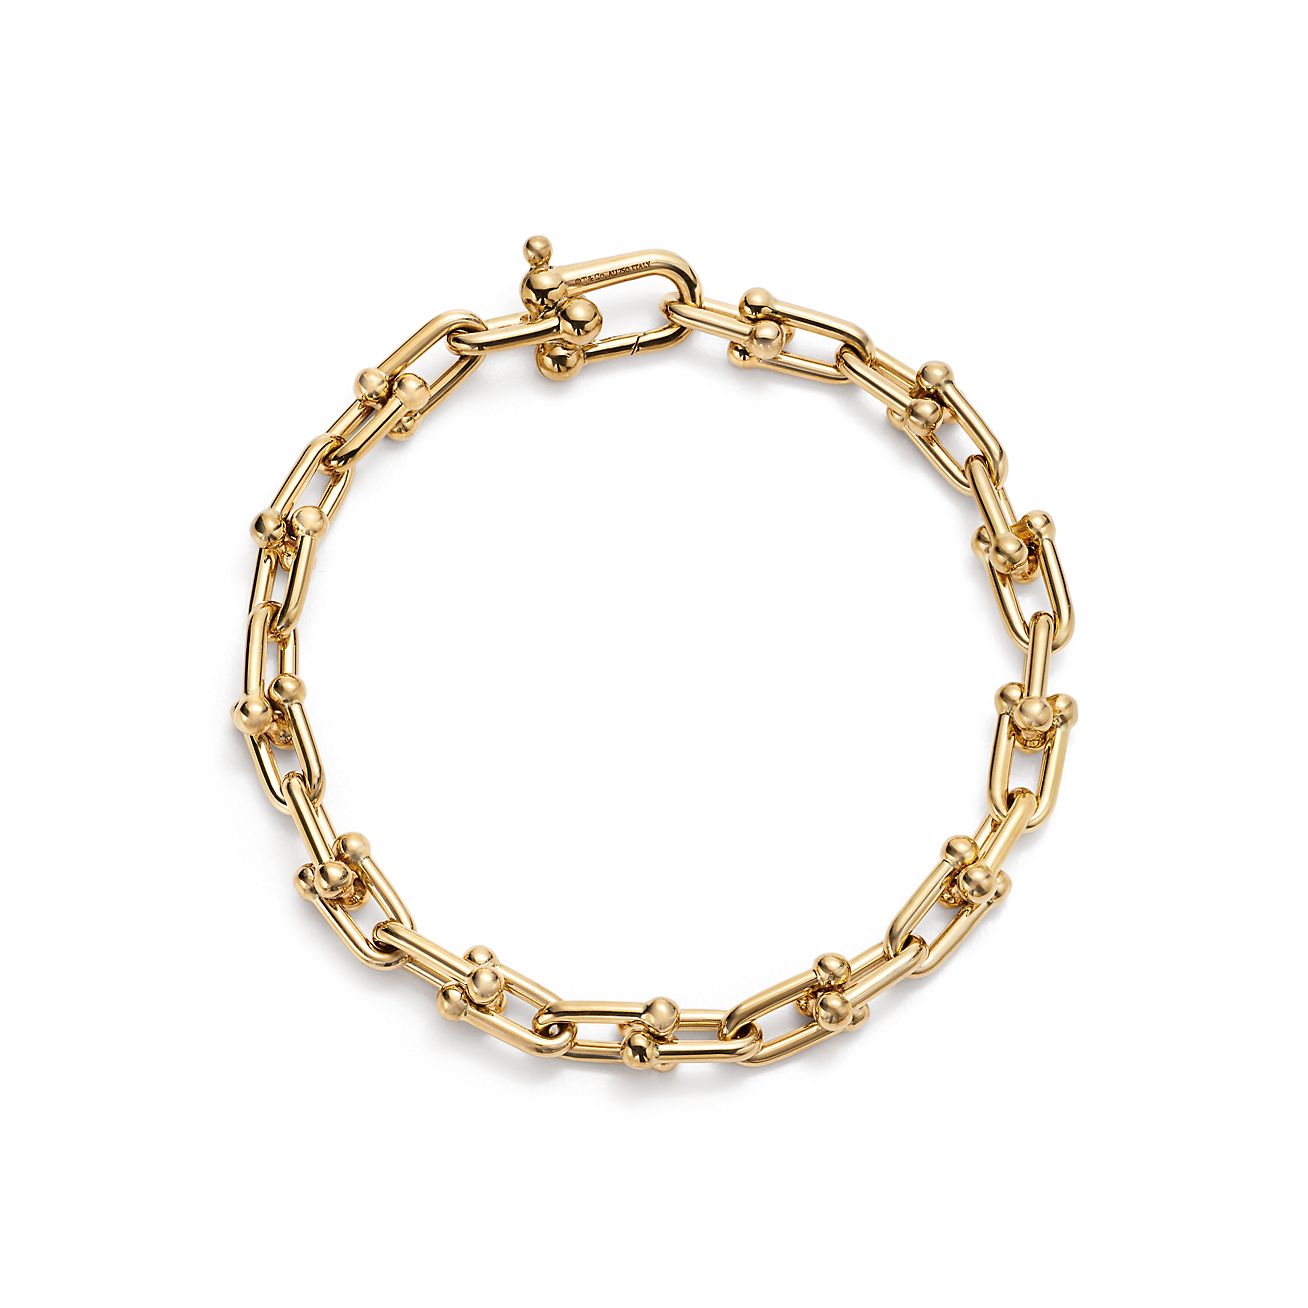 Stylish Gold Bracelets Design 